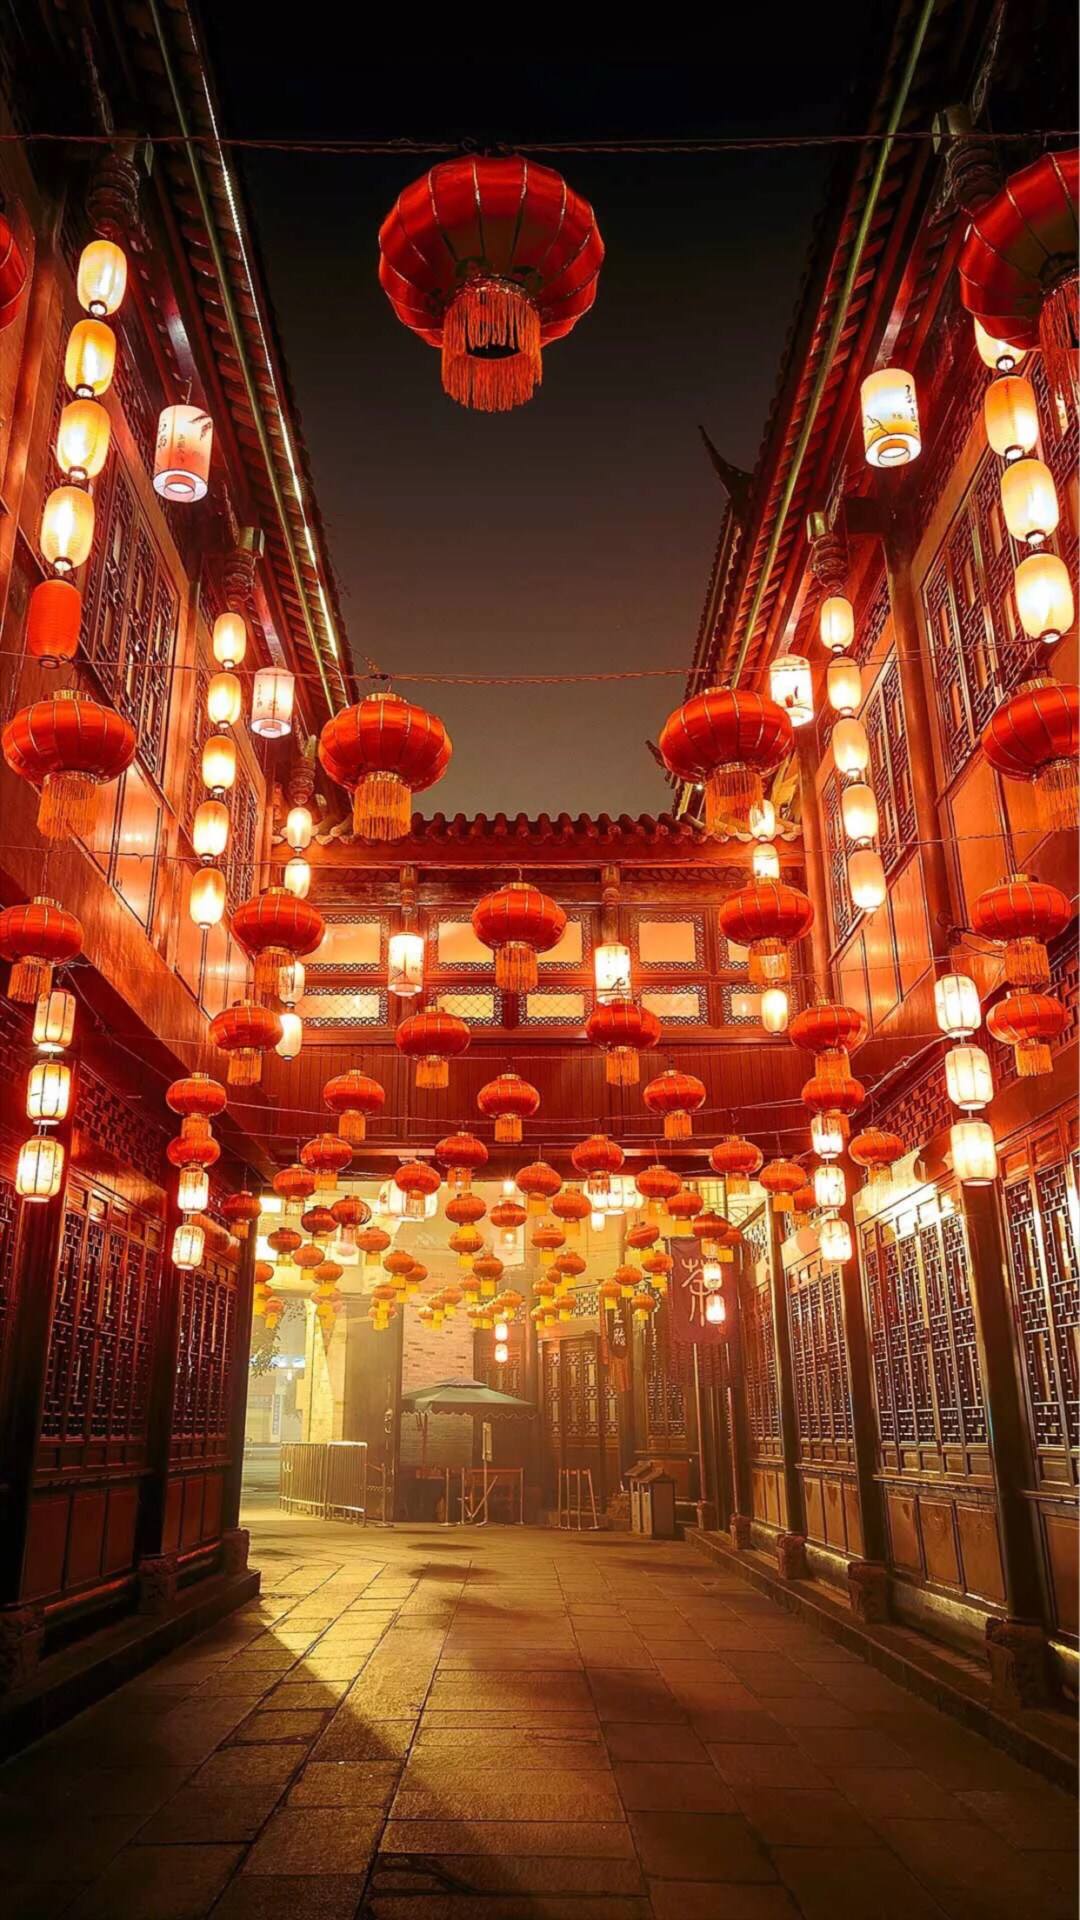  China Hintergrundbild 1080x1920. Chinese New Year Aesthetic Wallpaper